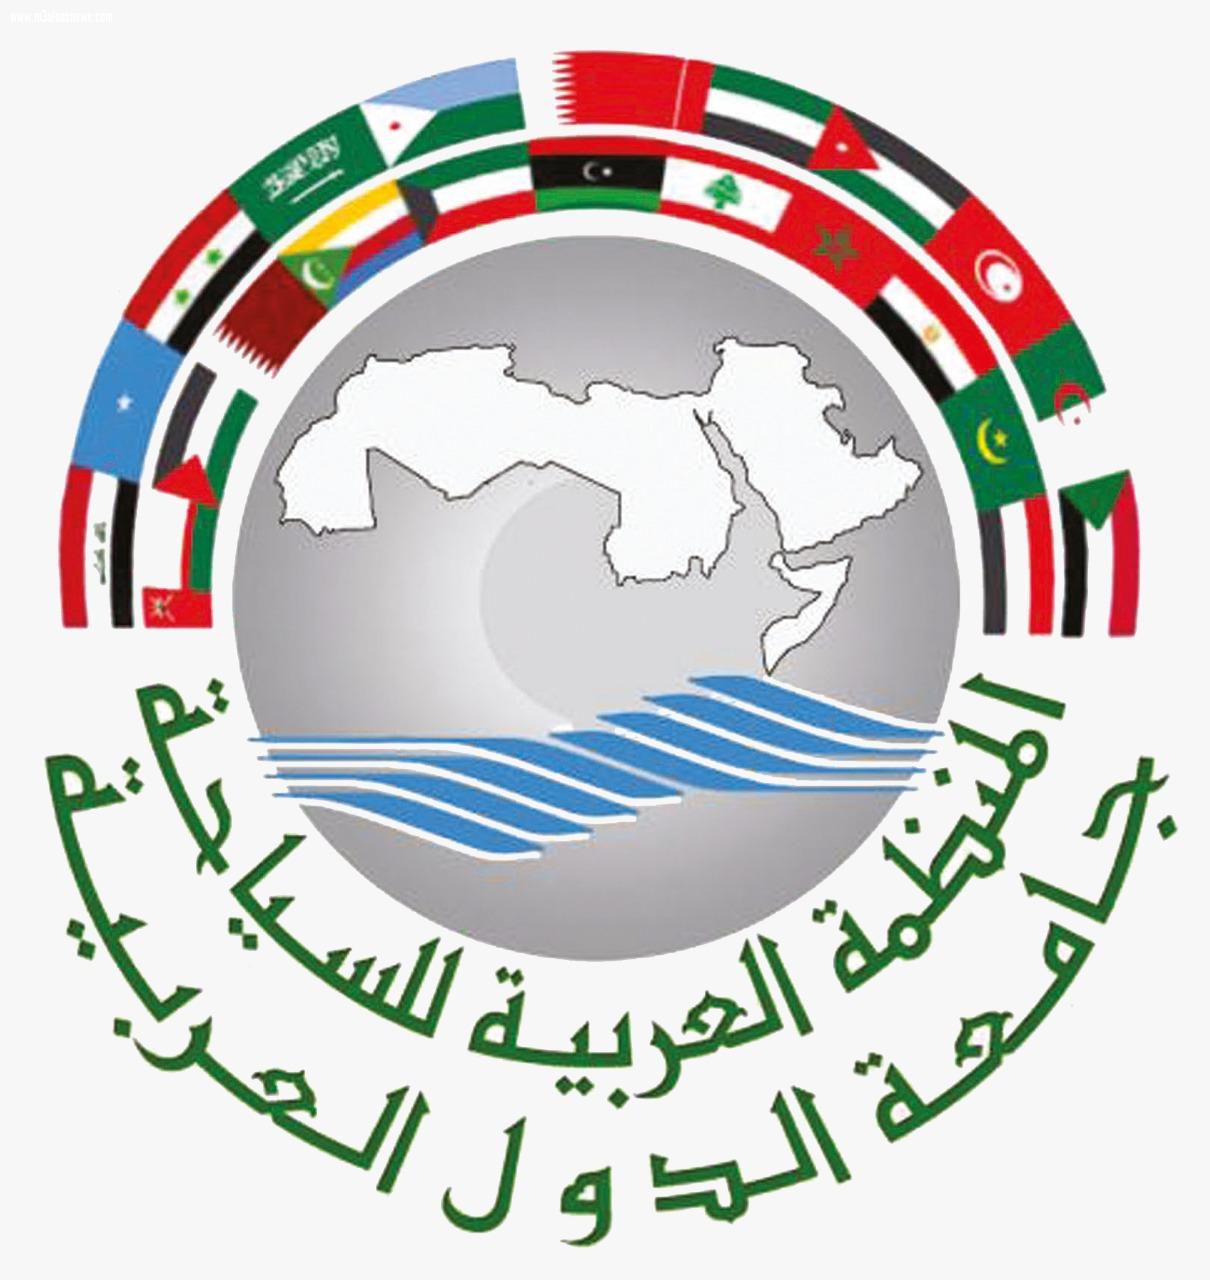 المنظمة العربية للسياحة تهنئ قيادة المملكة العربية السعودية لاحتفائها بتحقيق مستهدف ال ١٠٠ مليون سائح